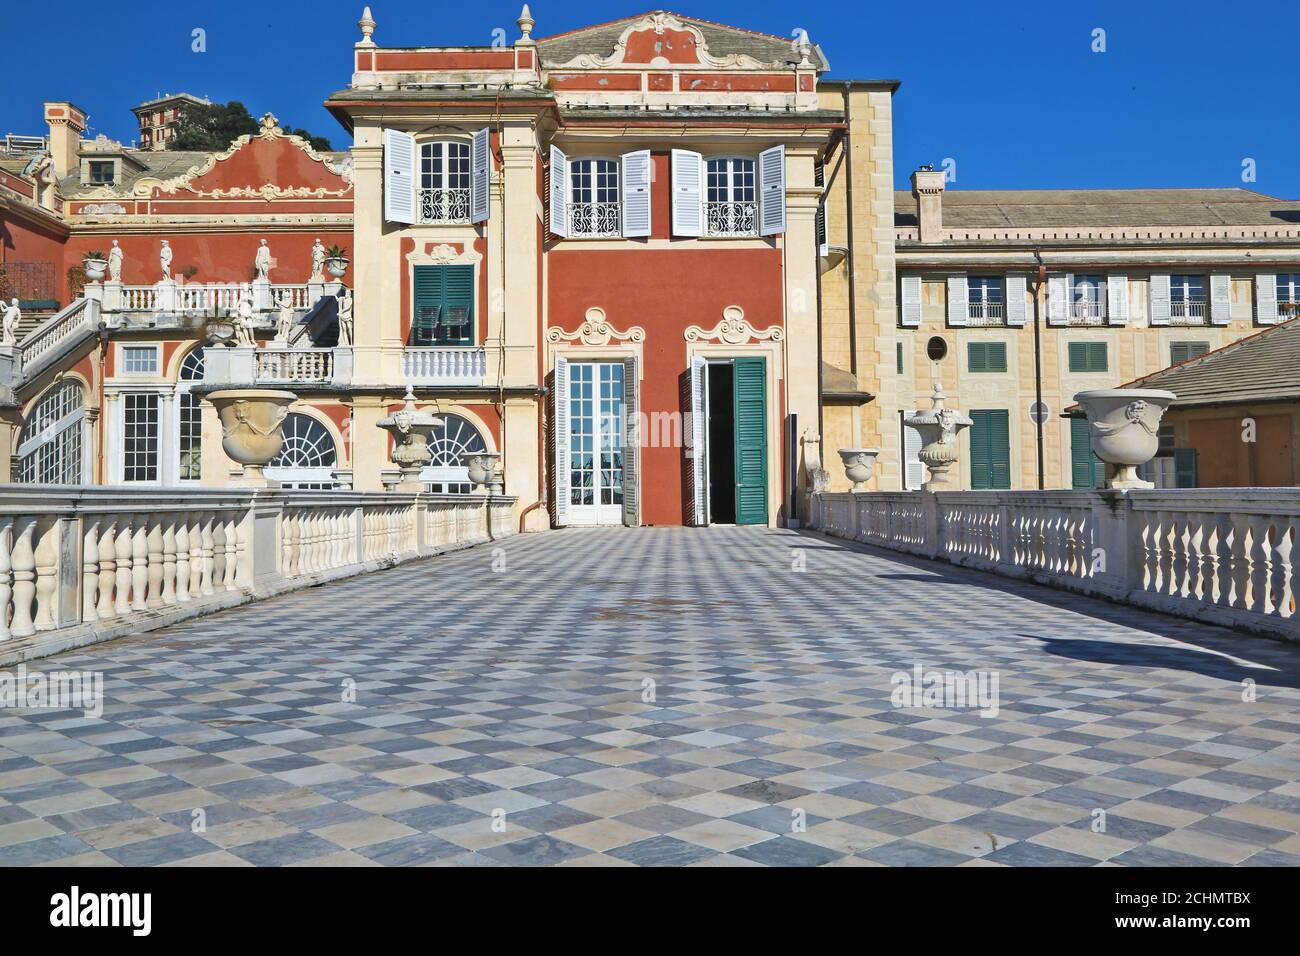 Italian historical palace in Genoa, Italy Stock Photo